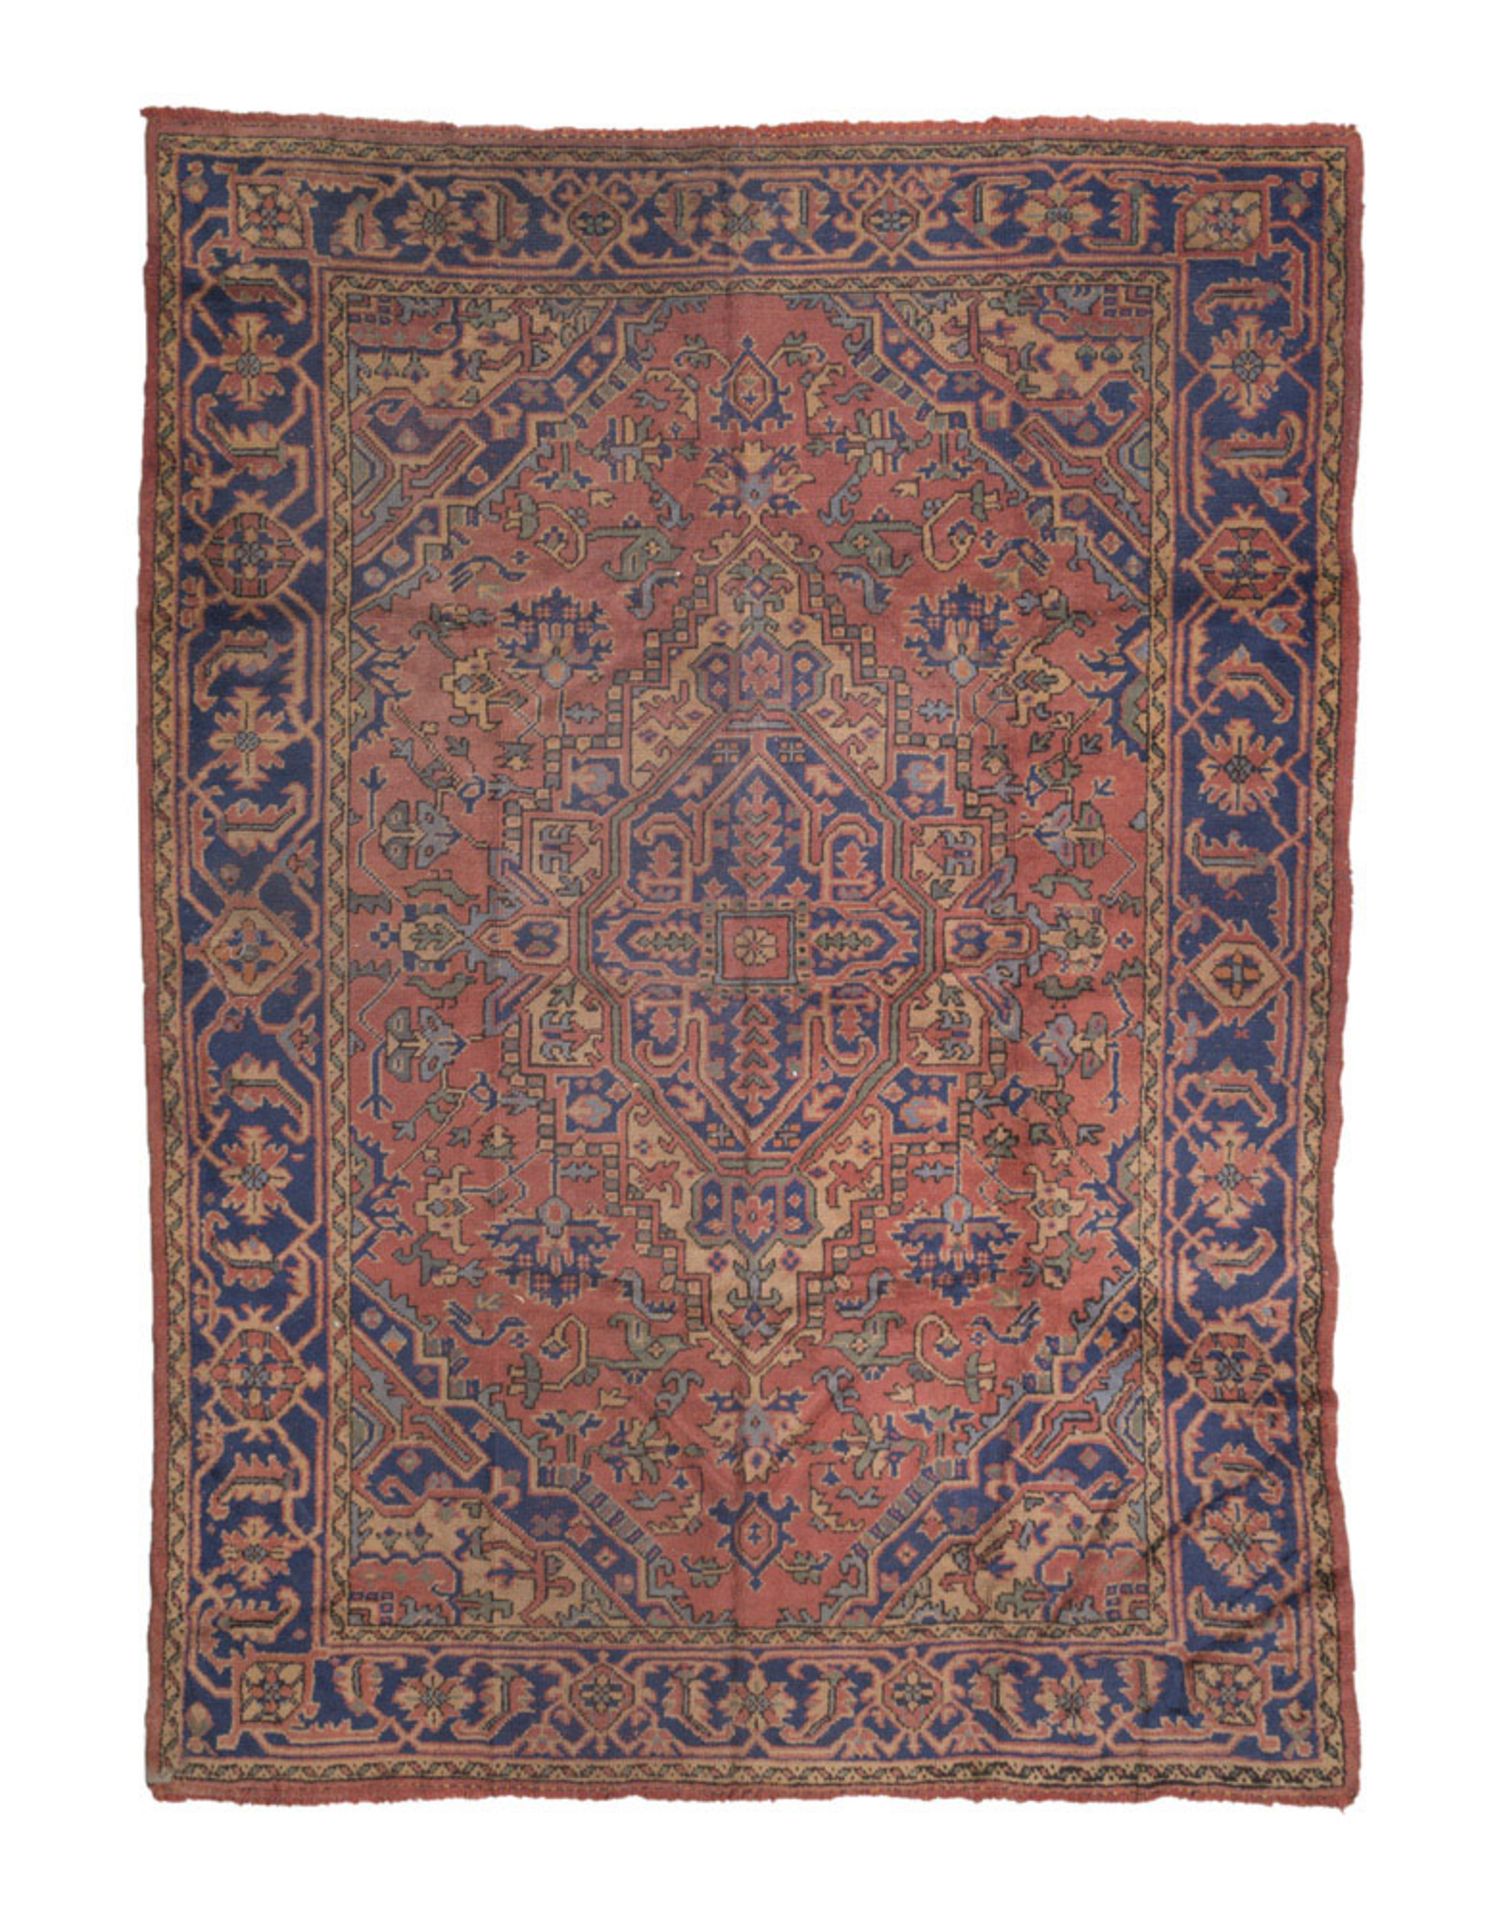 Anatolic Ushak Carpet, early 20th century. Measures cm. 303 x 218. TAPPETO ANATOLICO USHAK, INIZIO